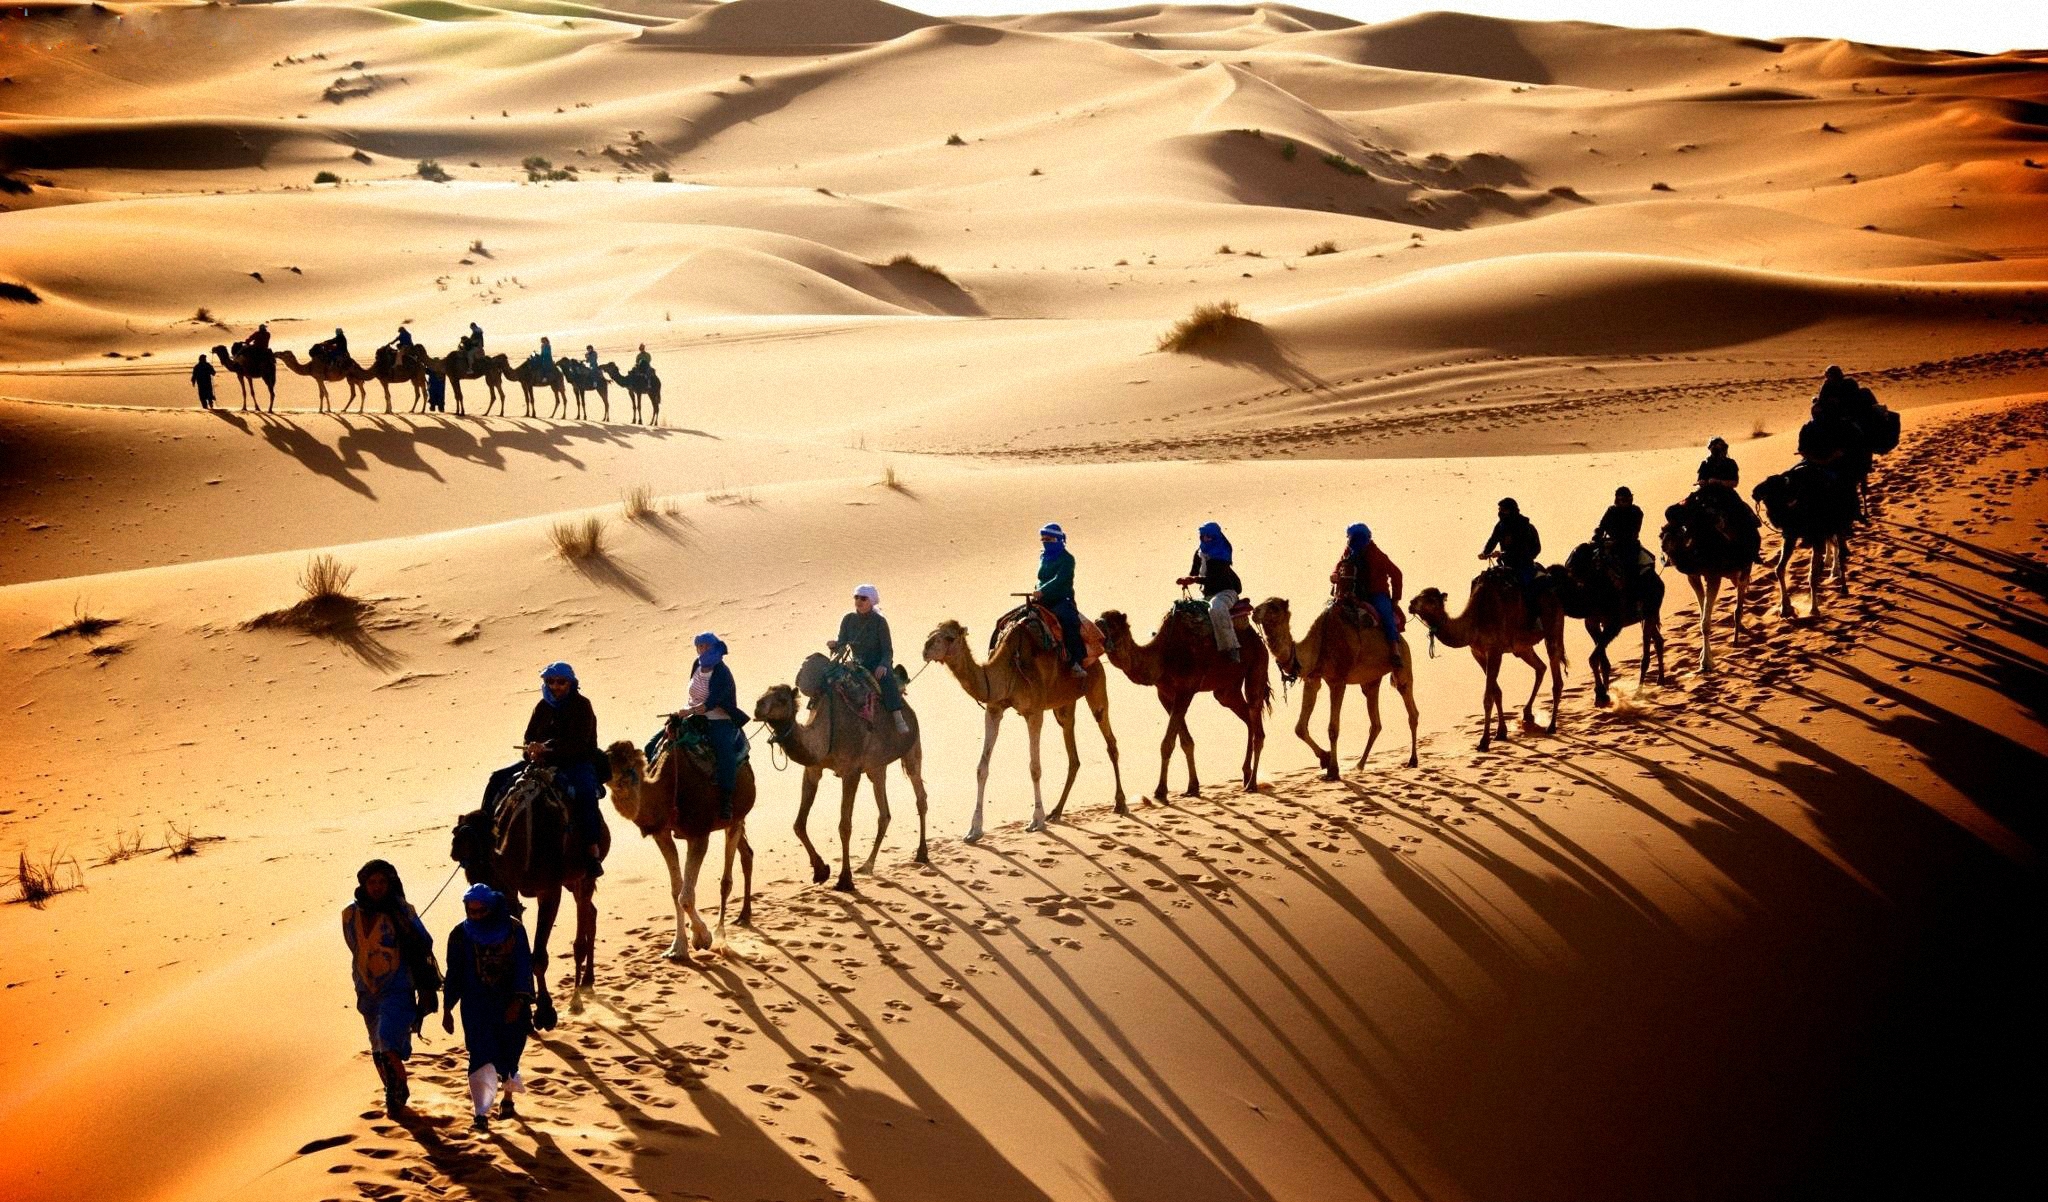 Делай караван. Верблюд Караван шелковый путь. Великий шелковый путь Караван. Караван верблюдов в пустыне.